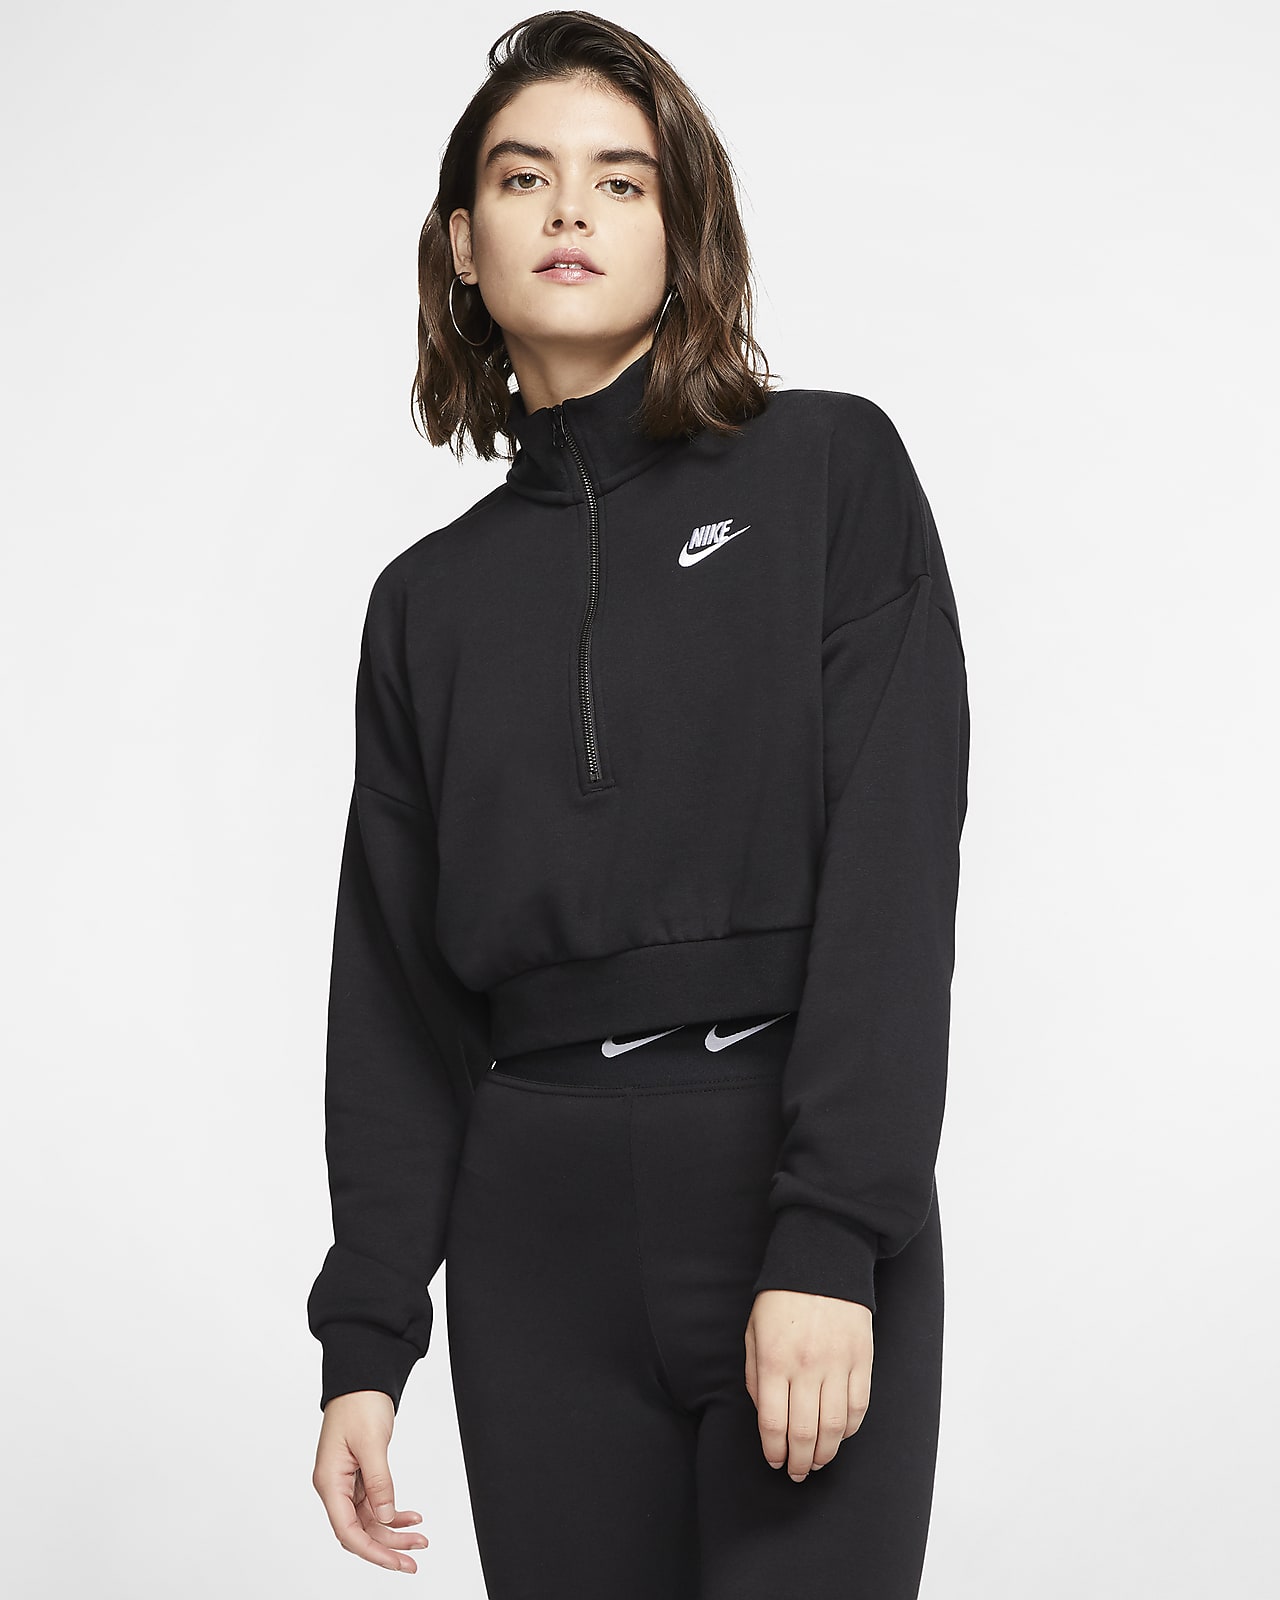 Nike Sportswear Essential Women's Fleece Long-Sleeve Crop Top. Nike EG